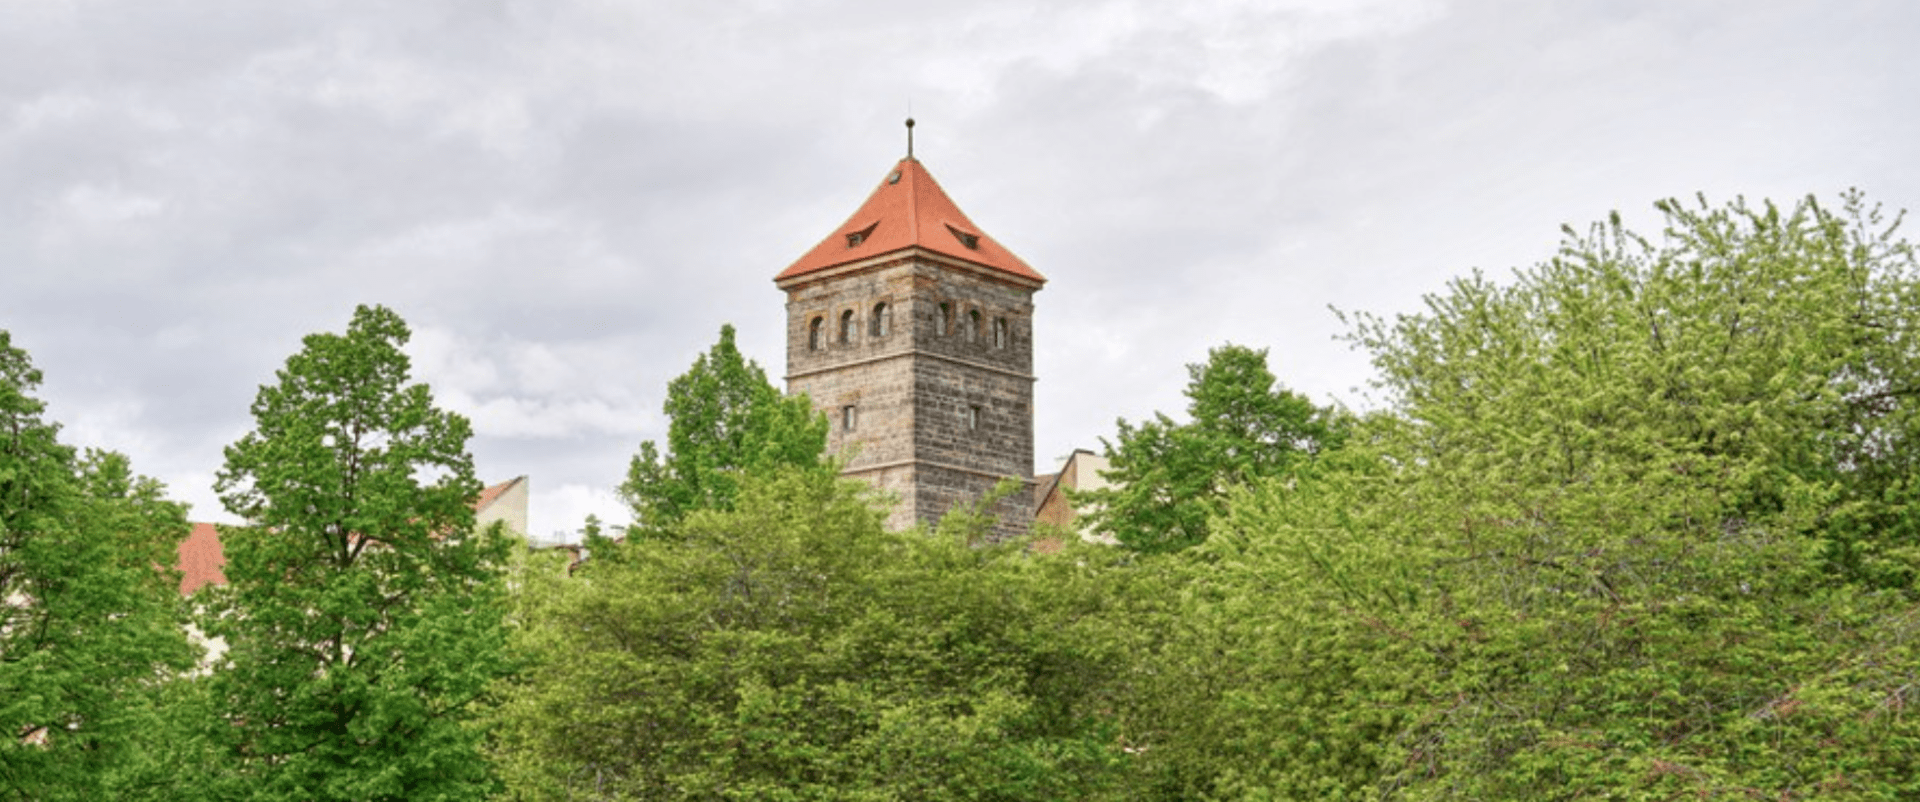 Novomlýnská věž v Praze